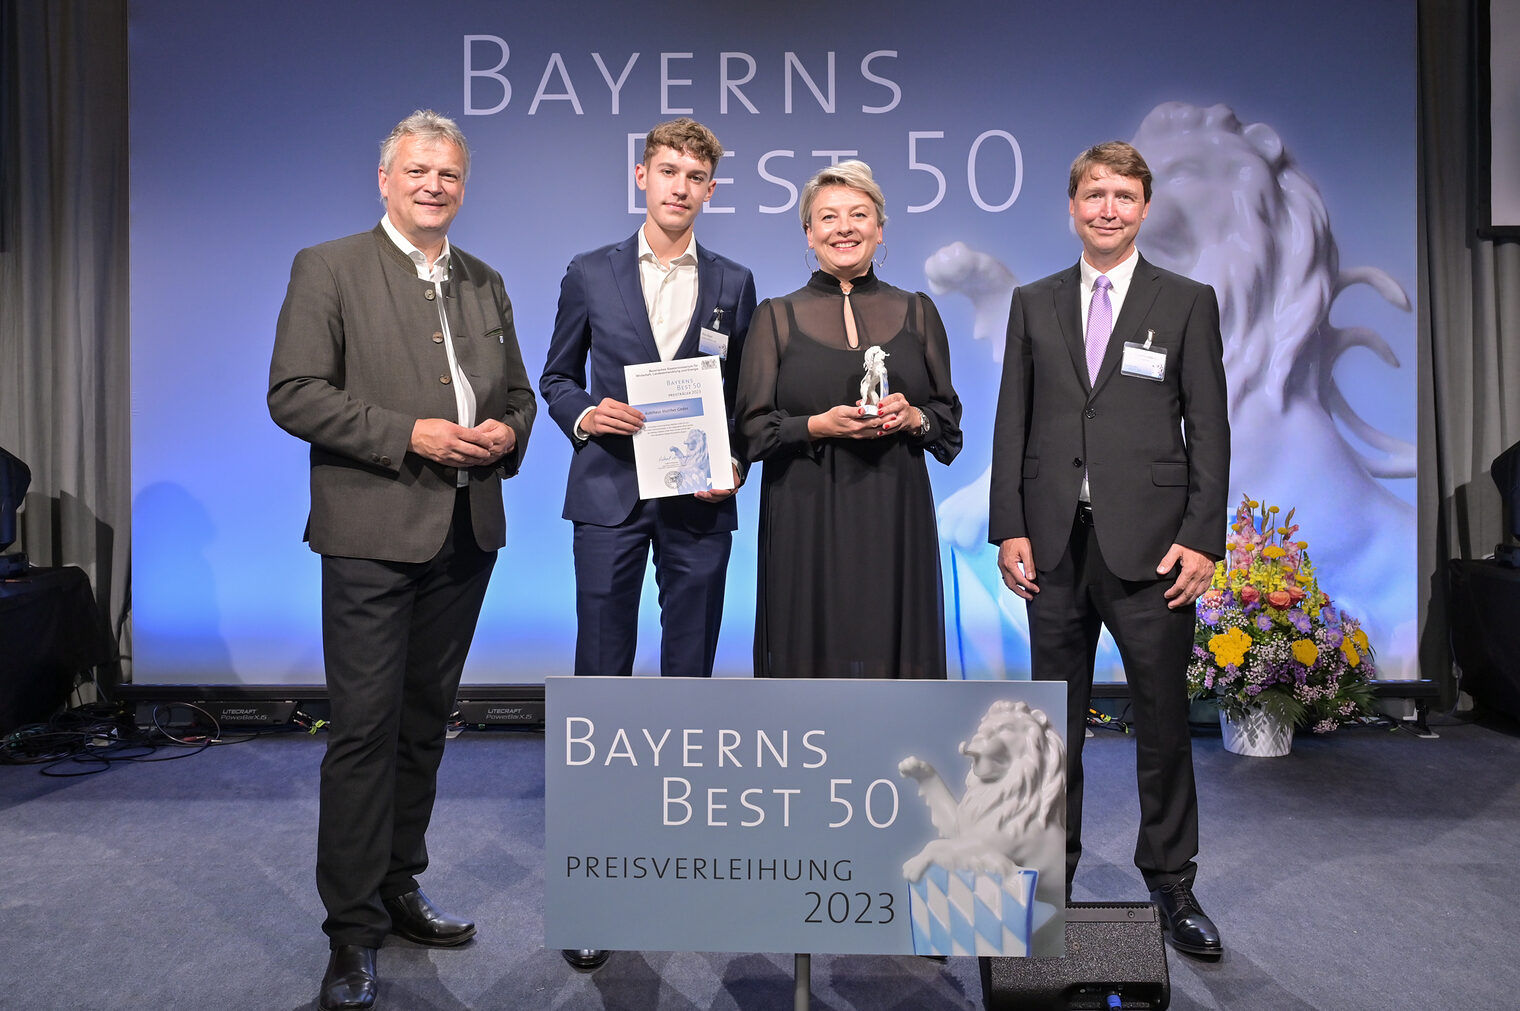 Bayerns Wirtschaftsstaatssekretär Roland Weigert (links) übergibt die Auszeichnung "Bayerns BEST 50" an das Autohaus Matthes aus Marktredwitz.